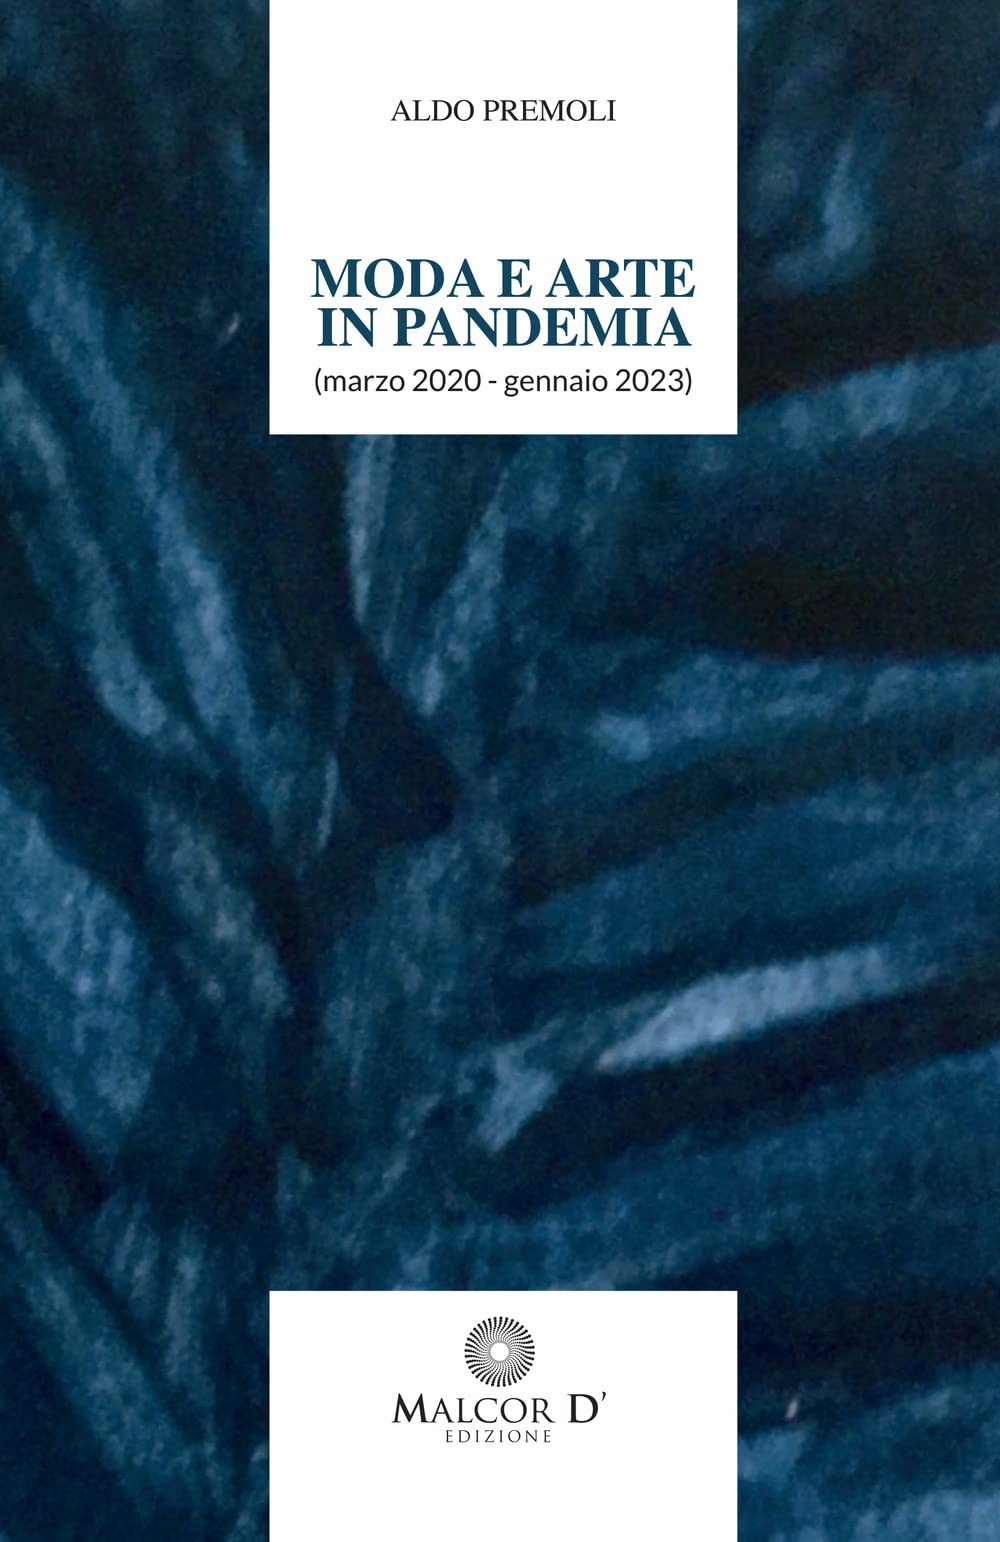 Aldo Premoli – Moda e arte in pandemia (marzo 2020 – gennaio 2023) (Malcor D', Catania 2022)